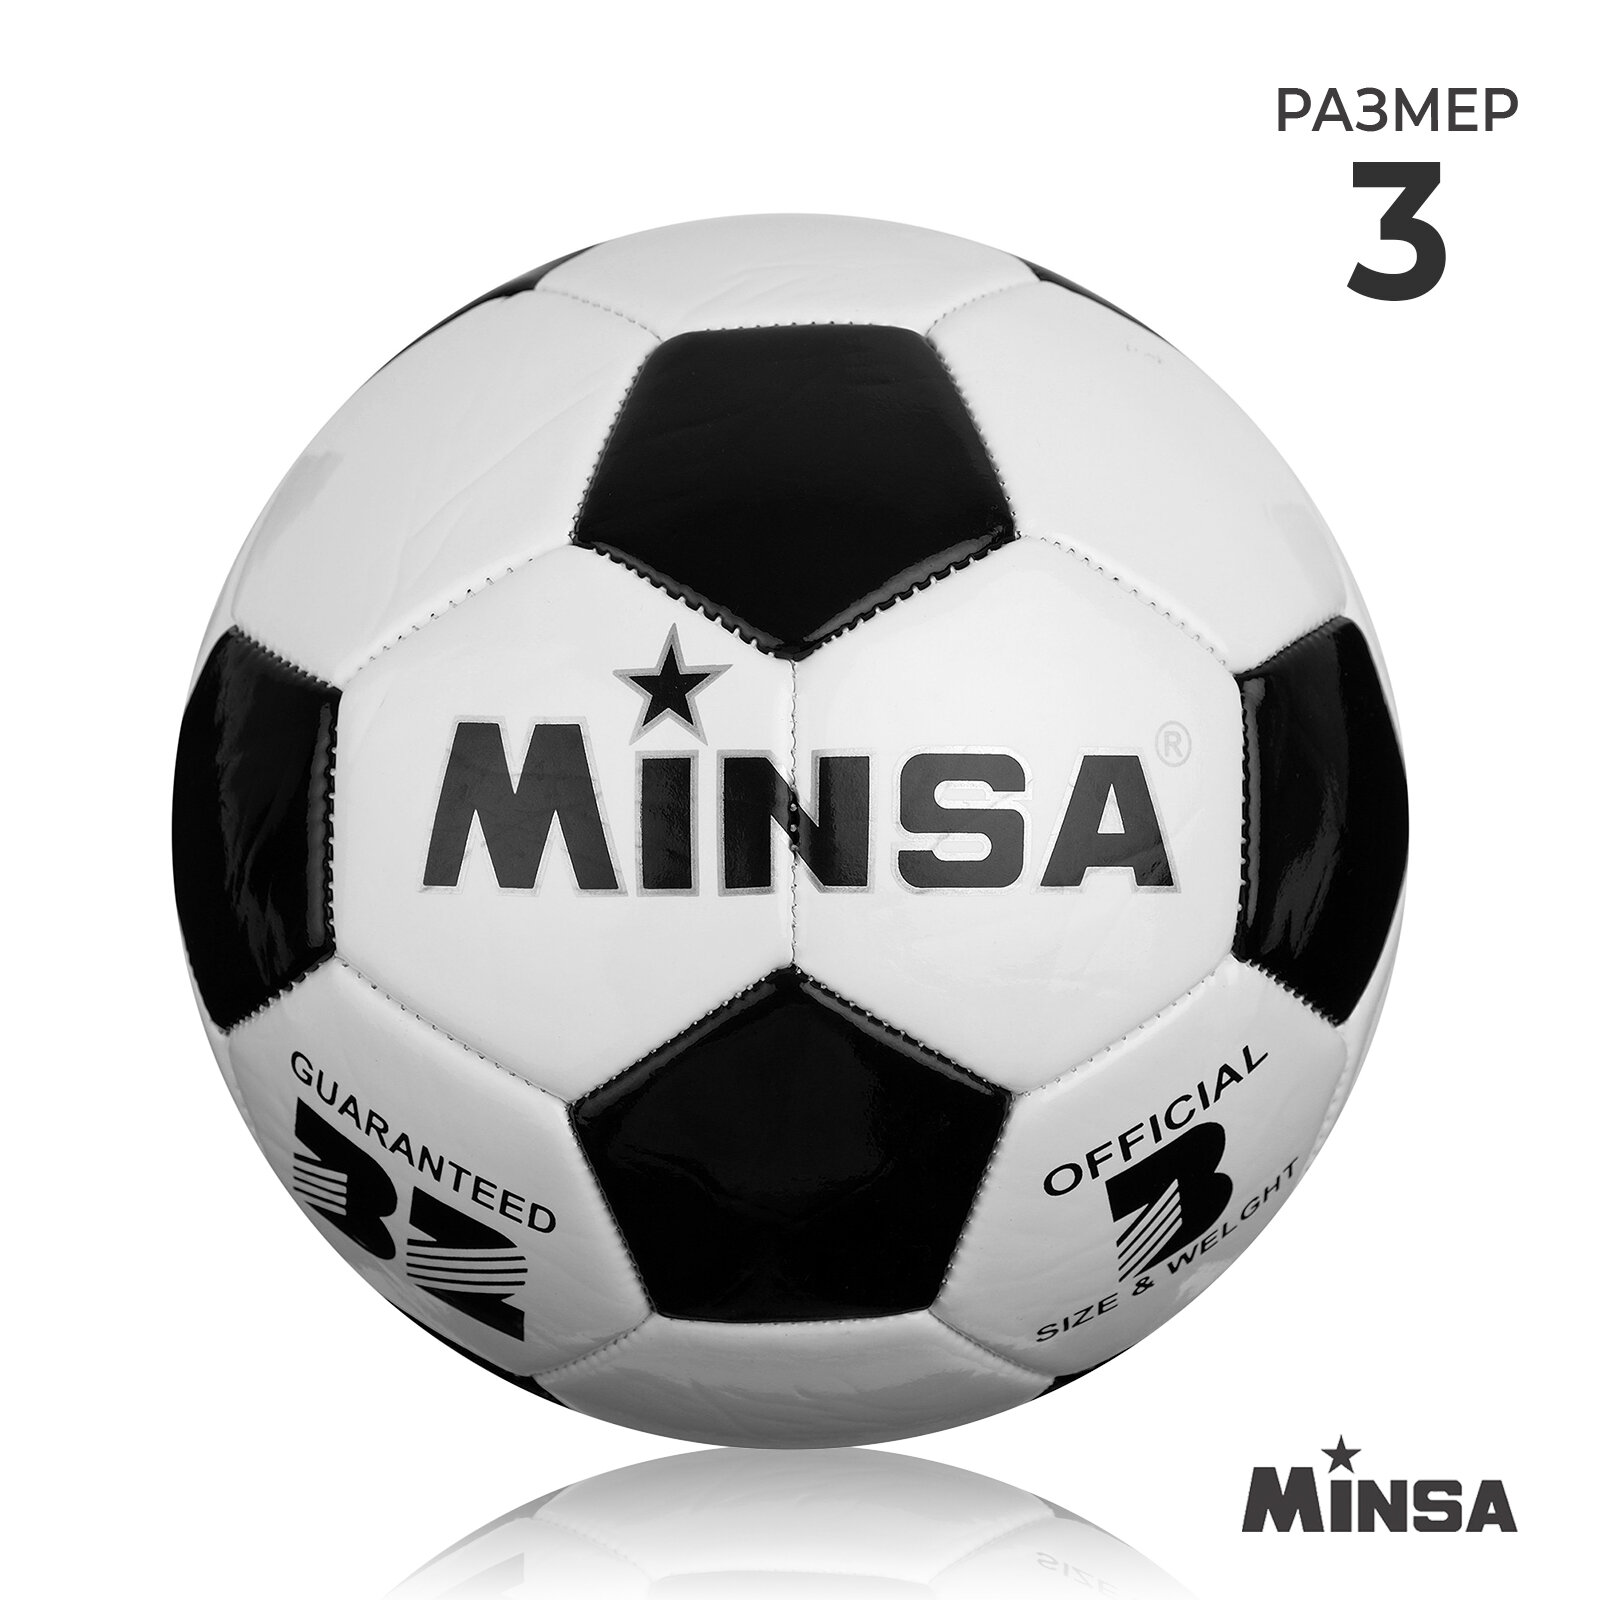 Мяч MINSA, футбольный, размер 3, 32 панели, PVC, машинная сшивка, вес 250 г, цвет черный, белый